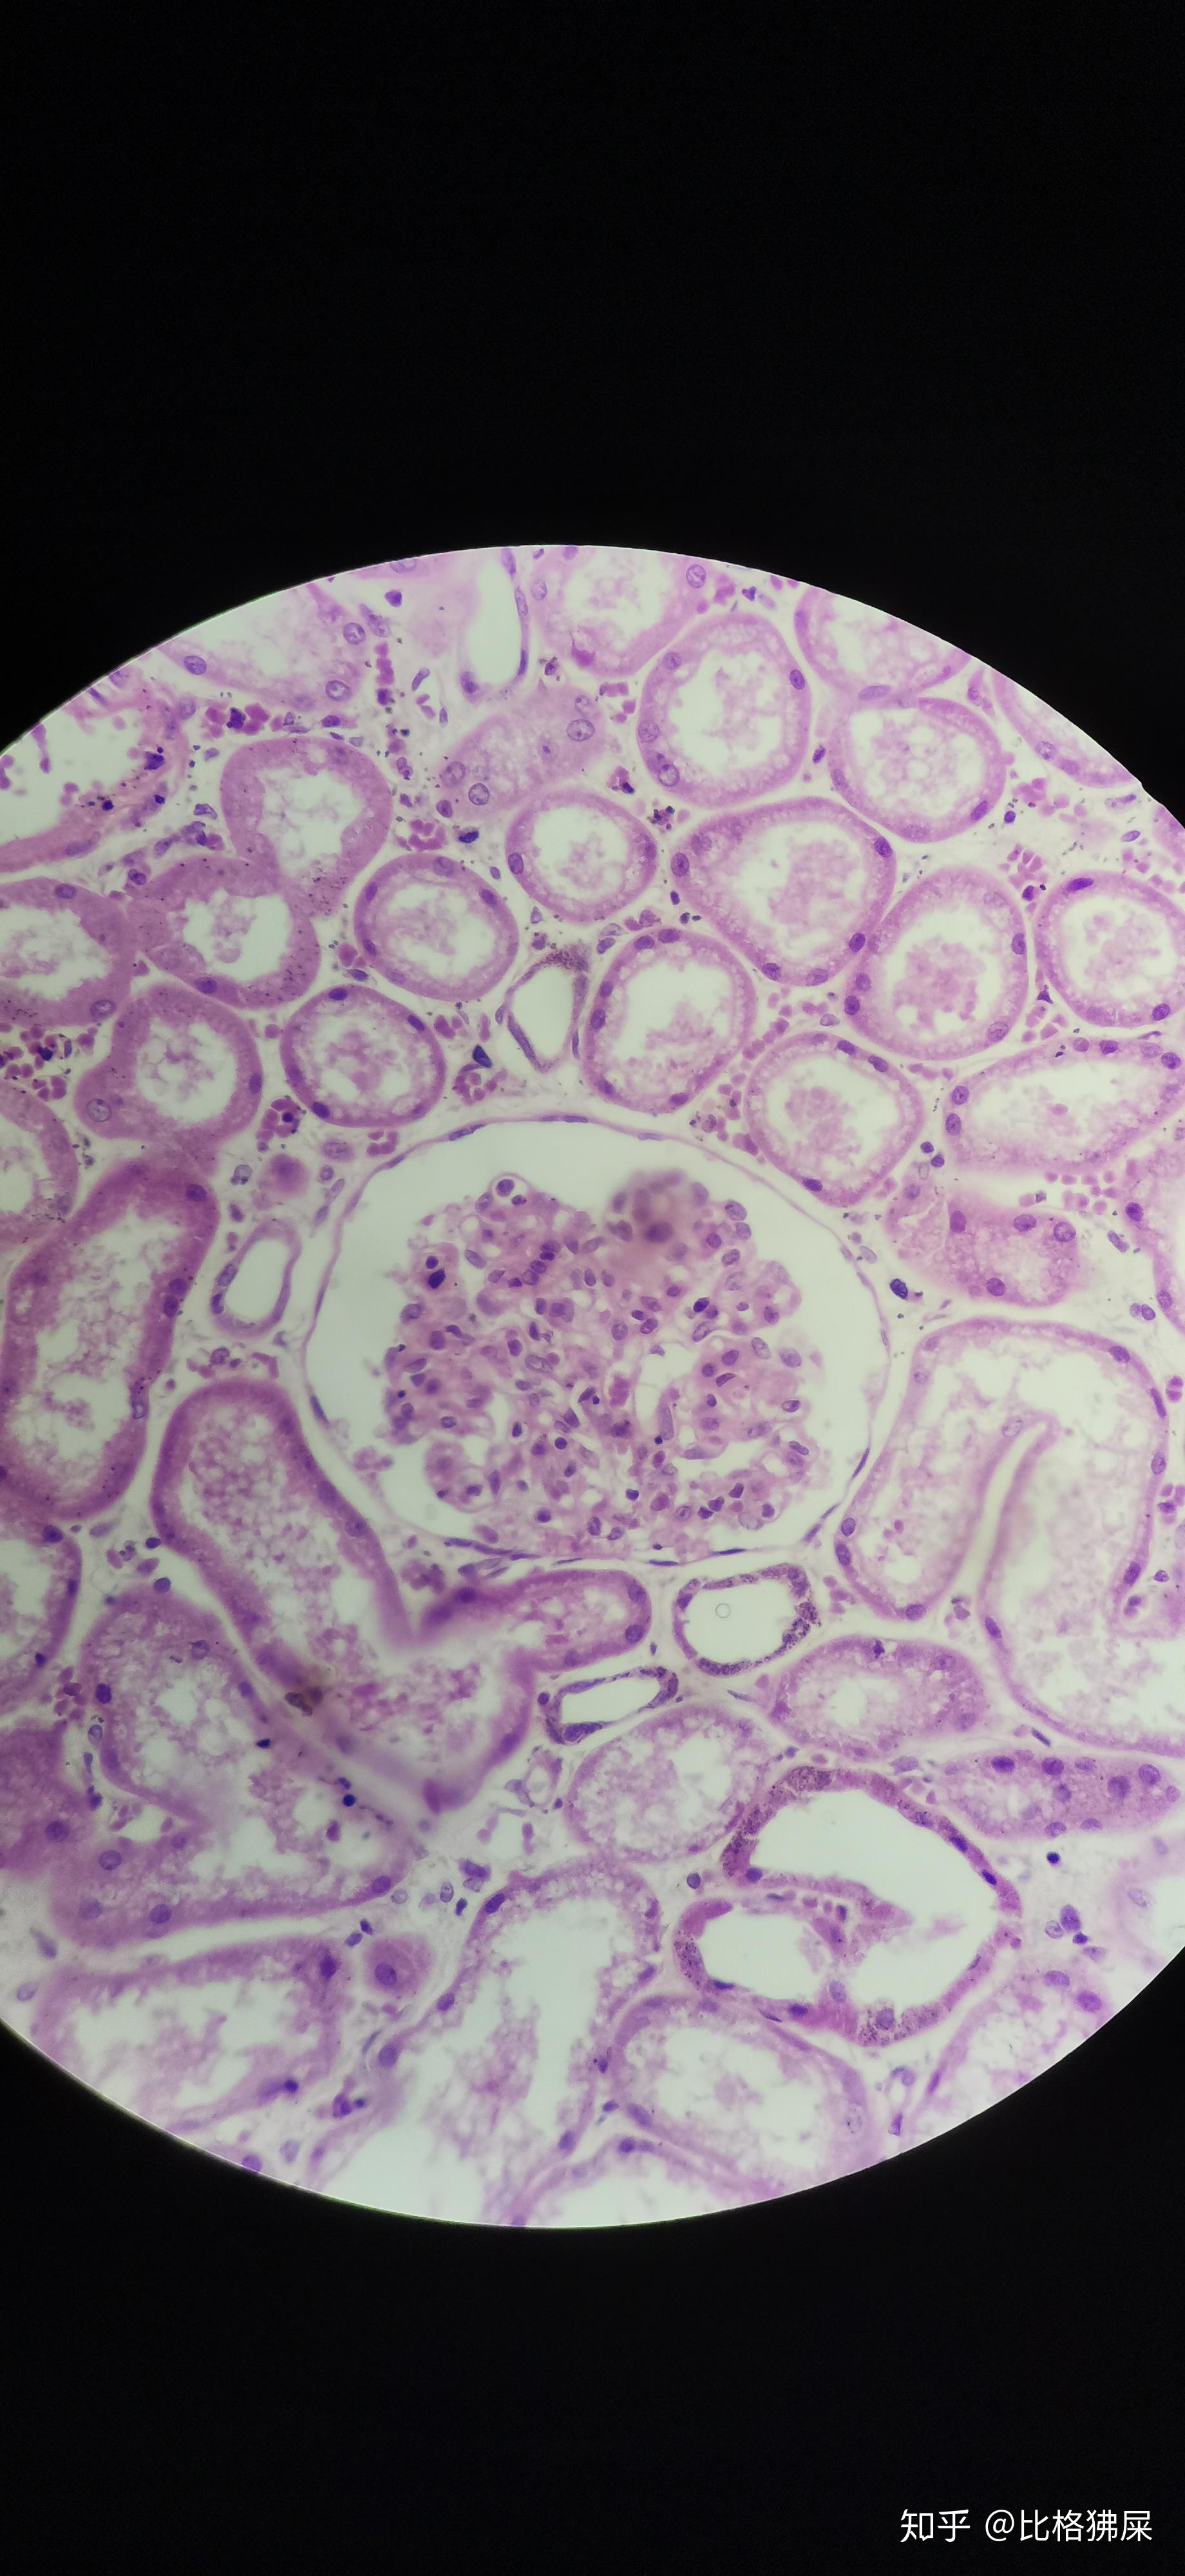 绘图要求:绘出肾小球体积增大,细胞(即内皮细胞和系膜细胞)数量增多